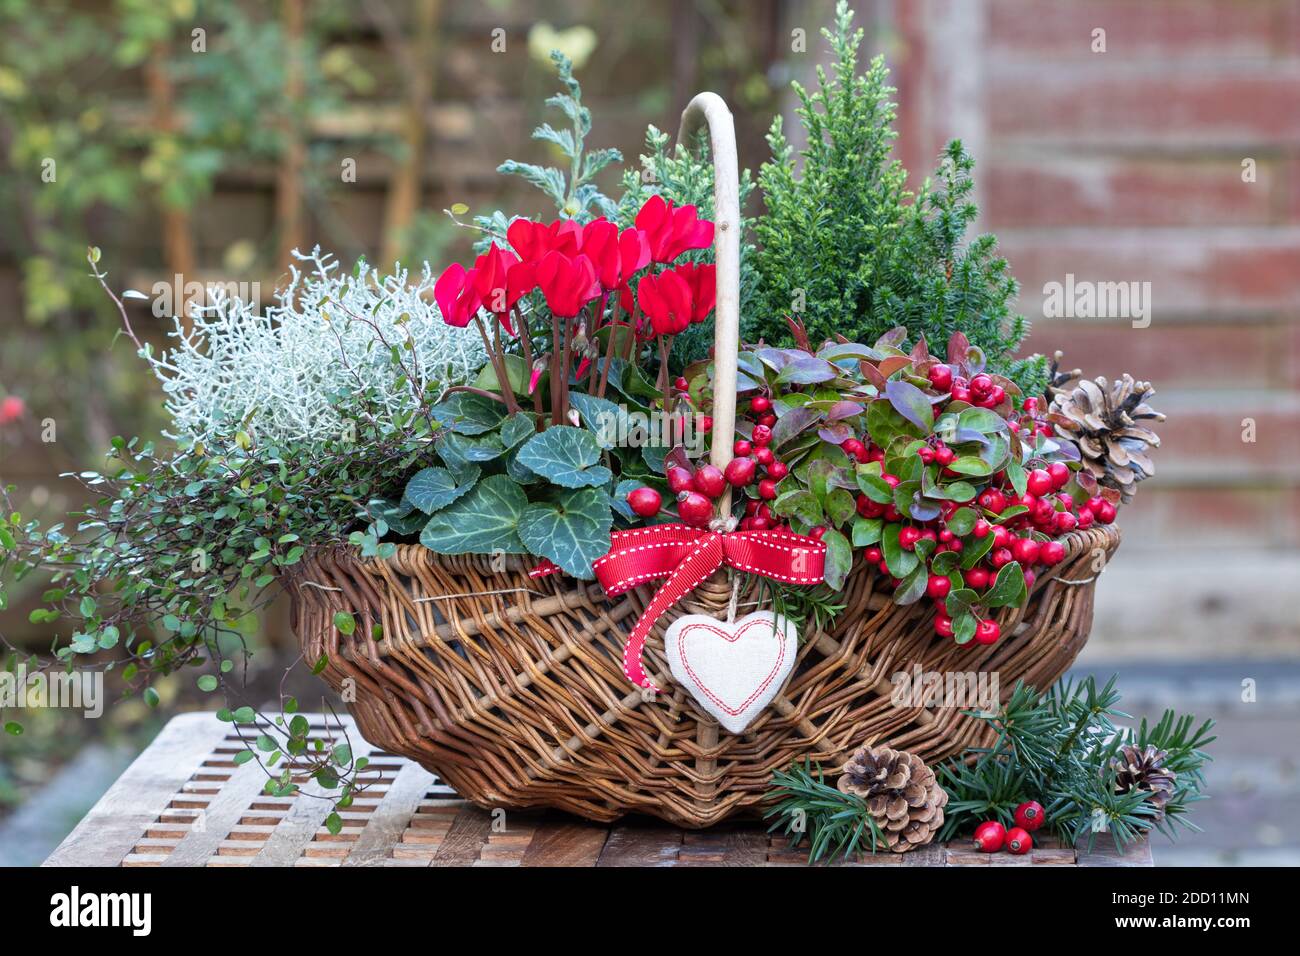 cesta con ciclamen rojo, gaulteria, coníferas y arbusto acolchado como decoración de jardín de invierno Foto de stock